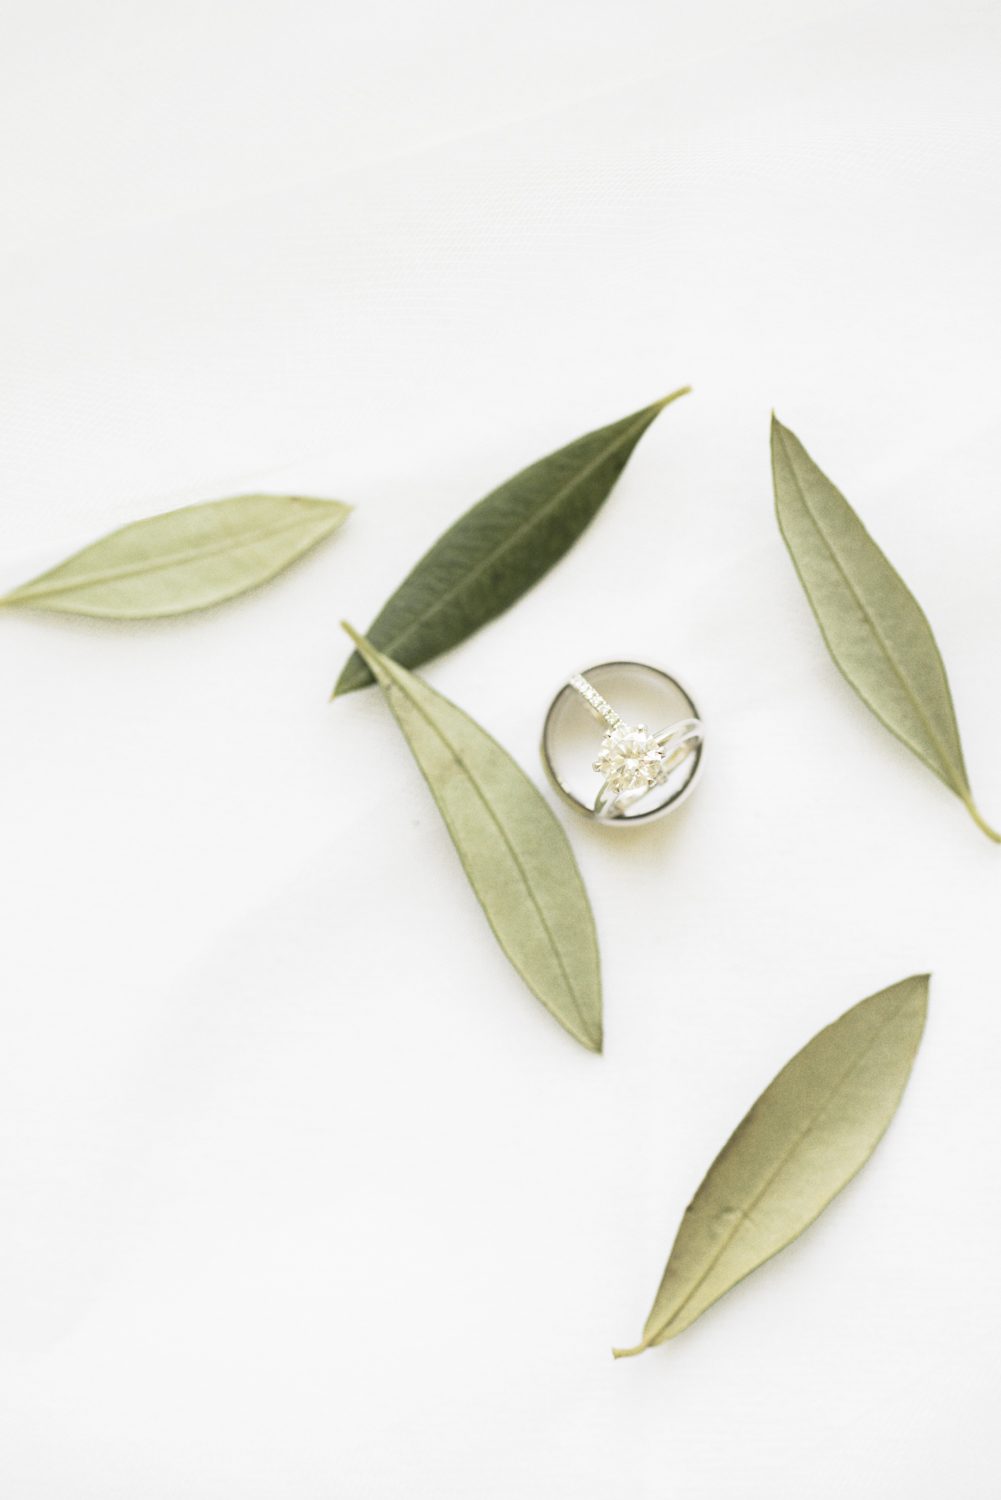 Лавровый лист оливковое масло. Серьги-кольца Olive Leaf 3d model. Прозрачные листья оливы из пластика. Как выглядит лист оливы. Olive me Loves.